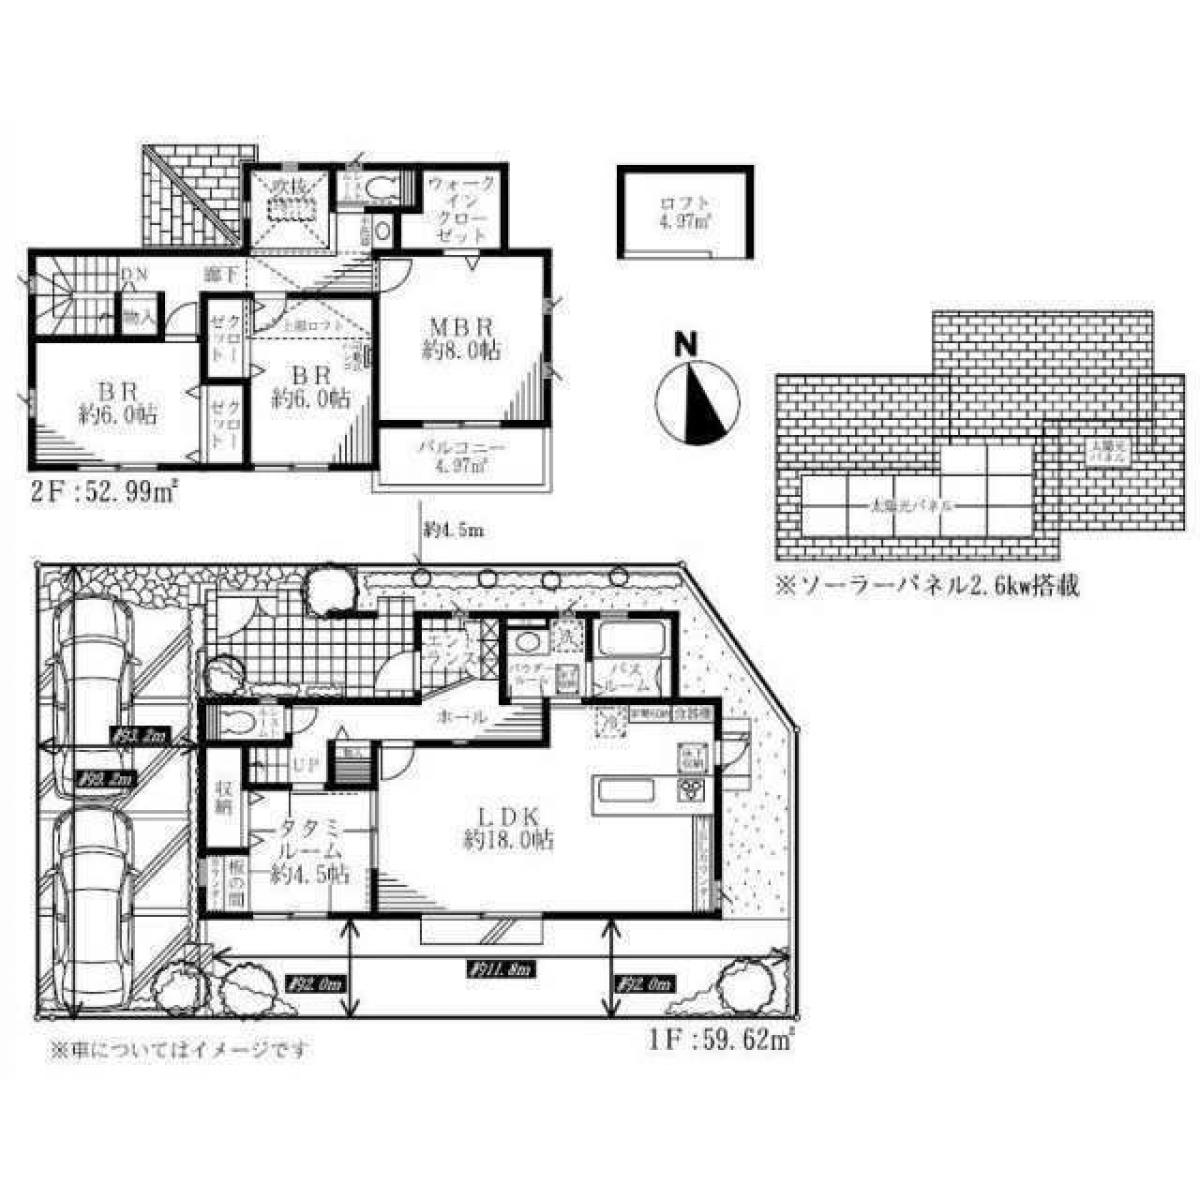 Picture of Home For Sale in Kawasaki Shi Miyamae Ku, Kanagawa, Japan